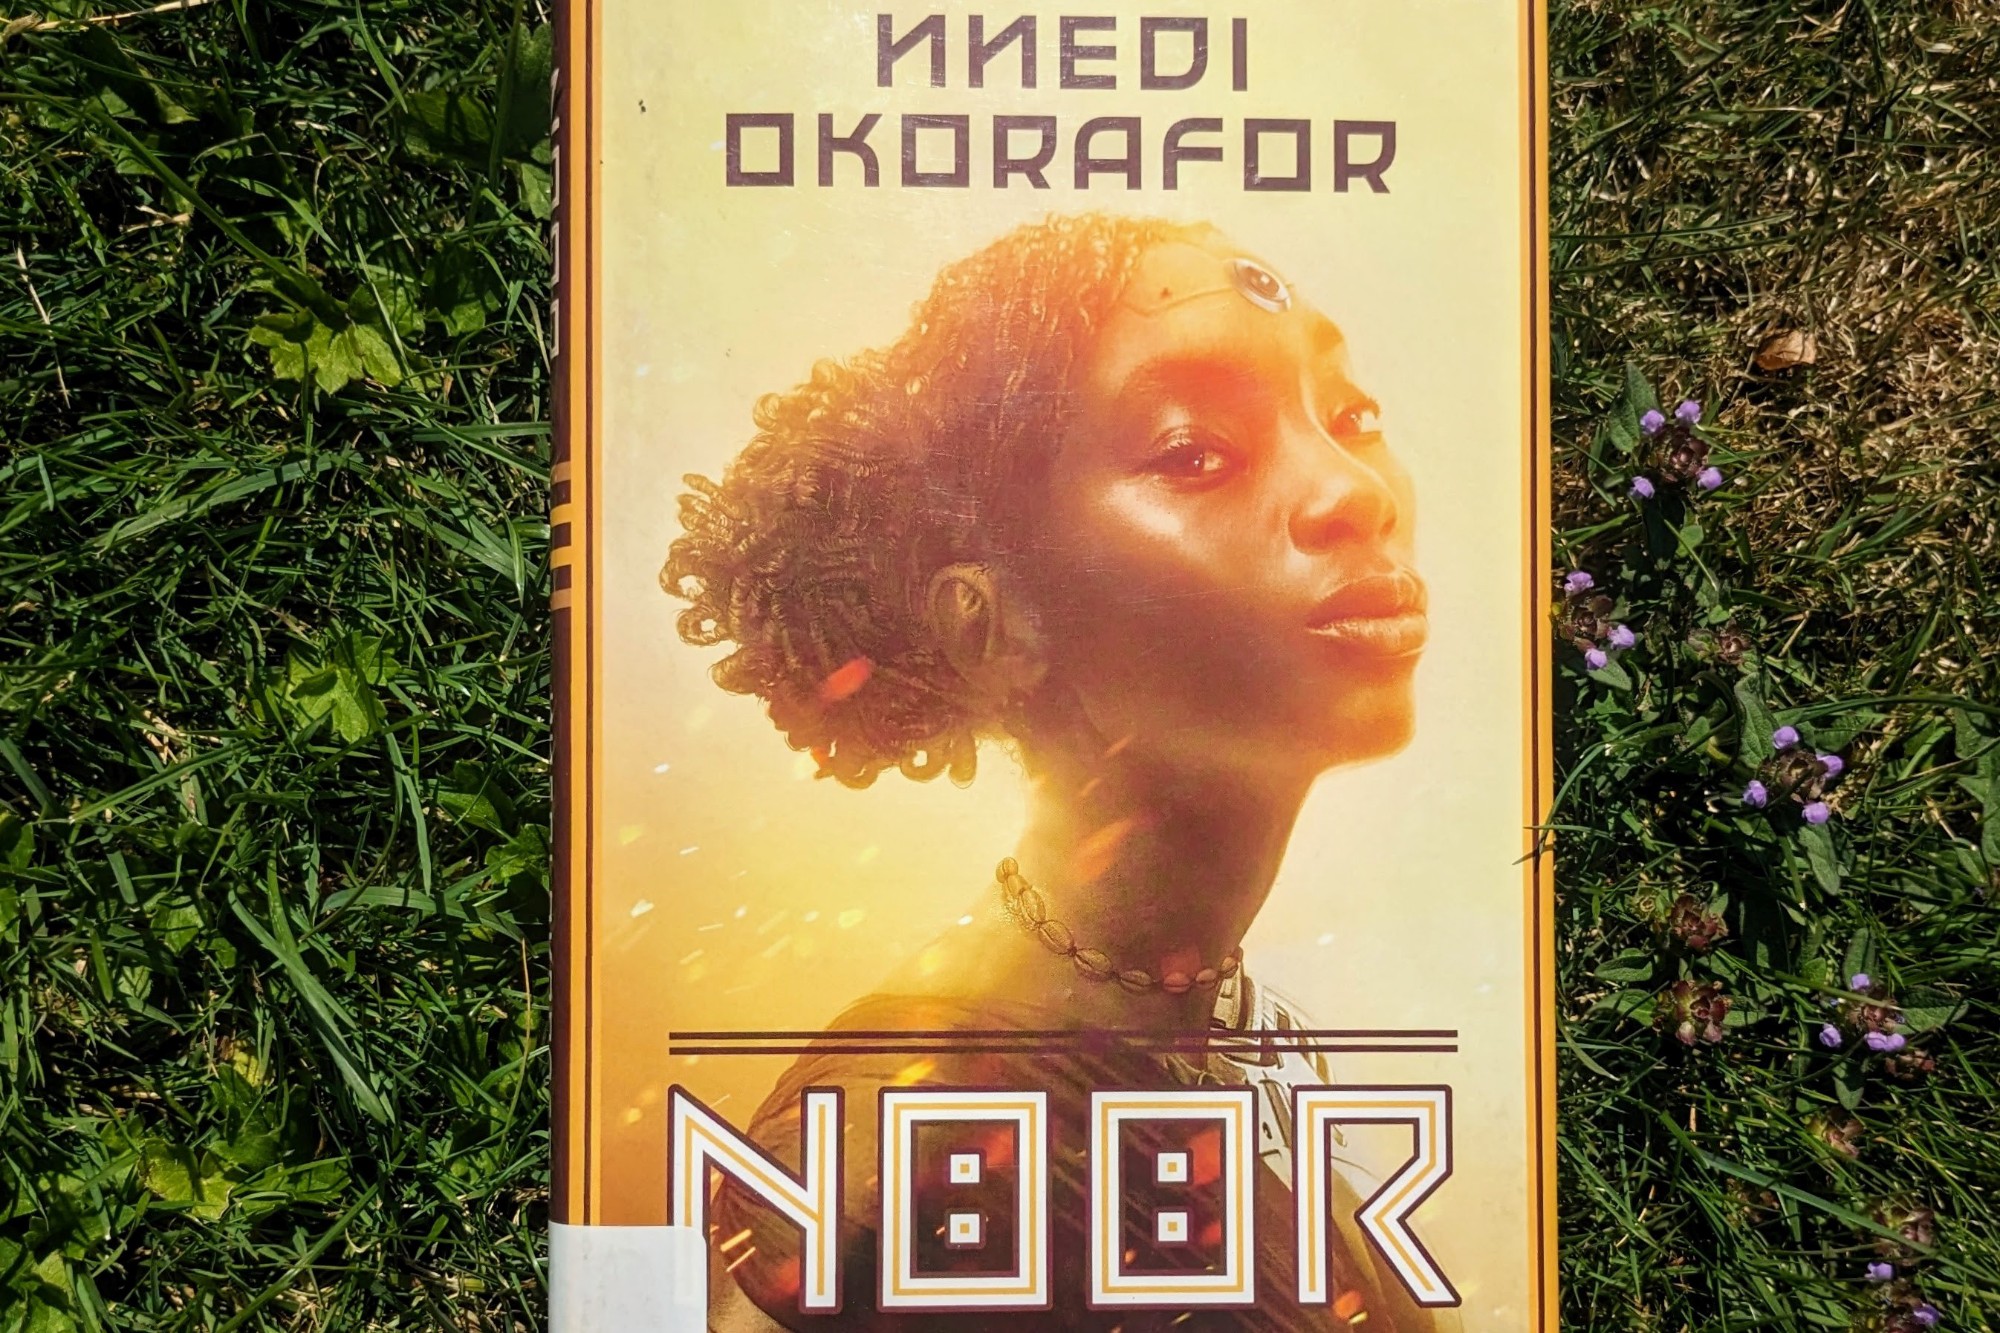 A copy of Noor by Nnedi Okorafor lying on grass. 